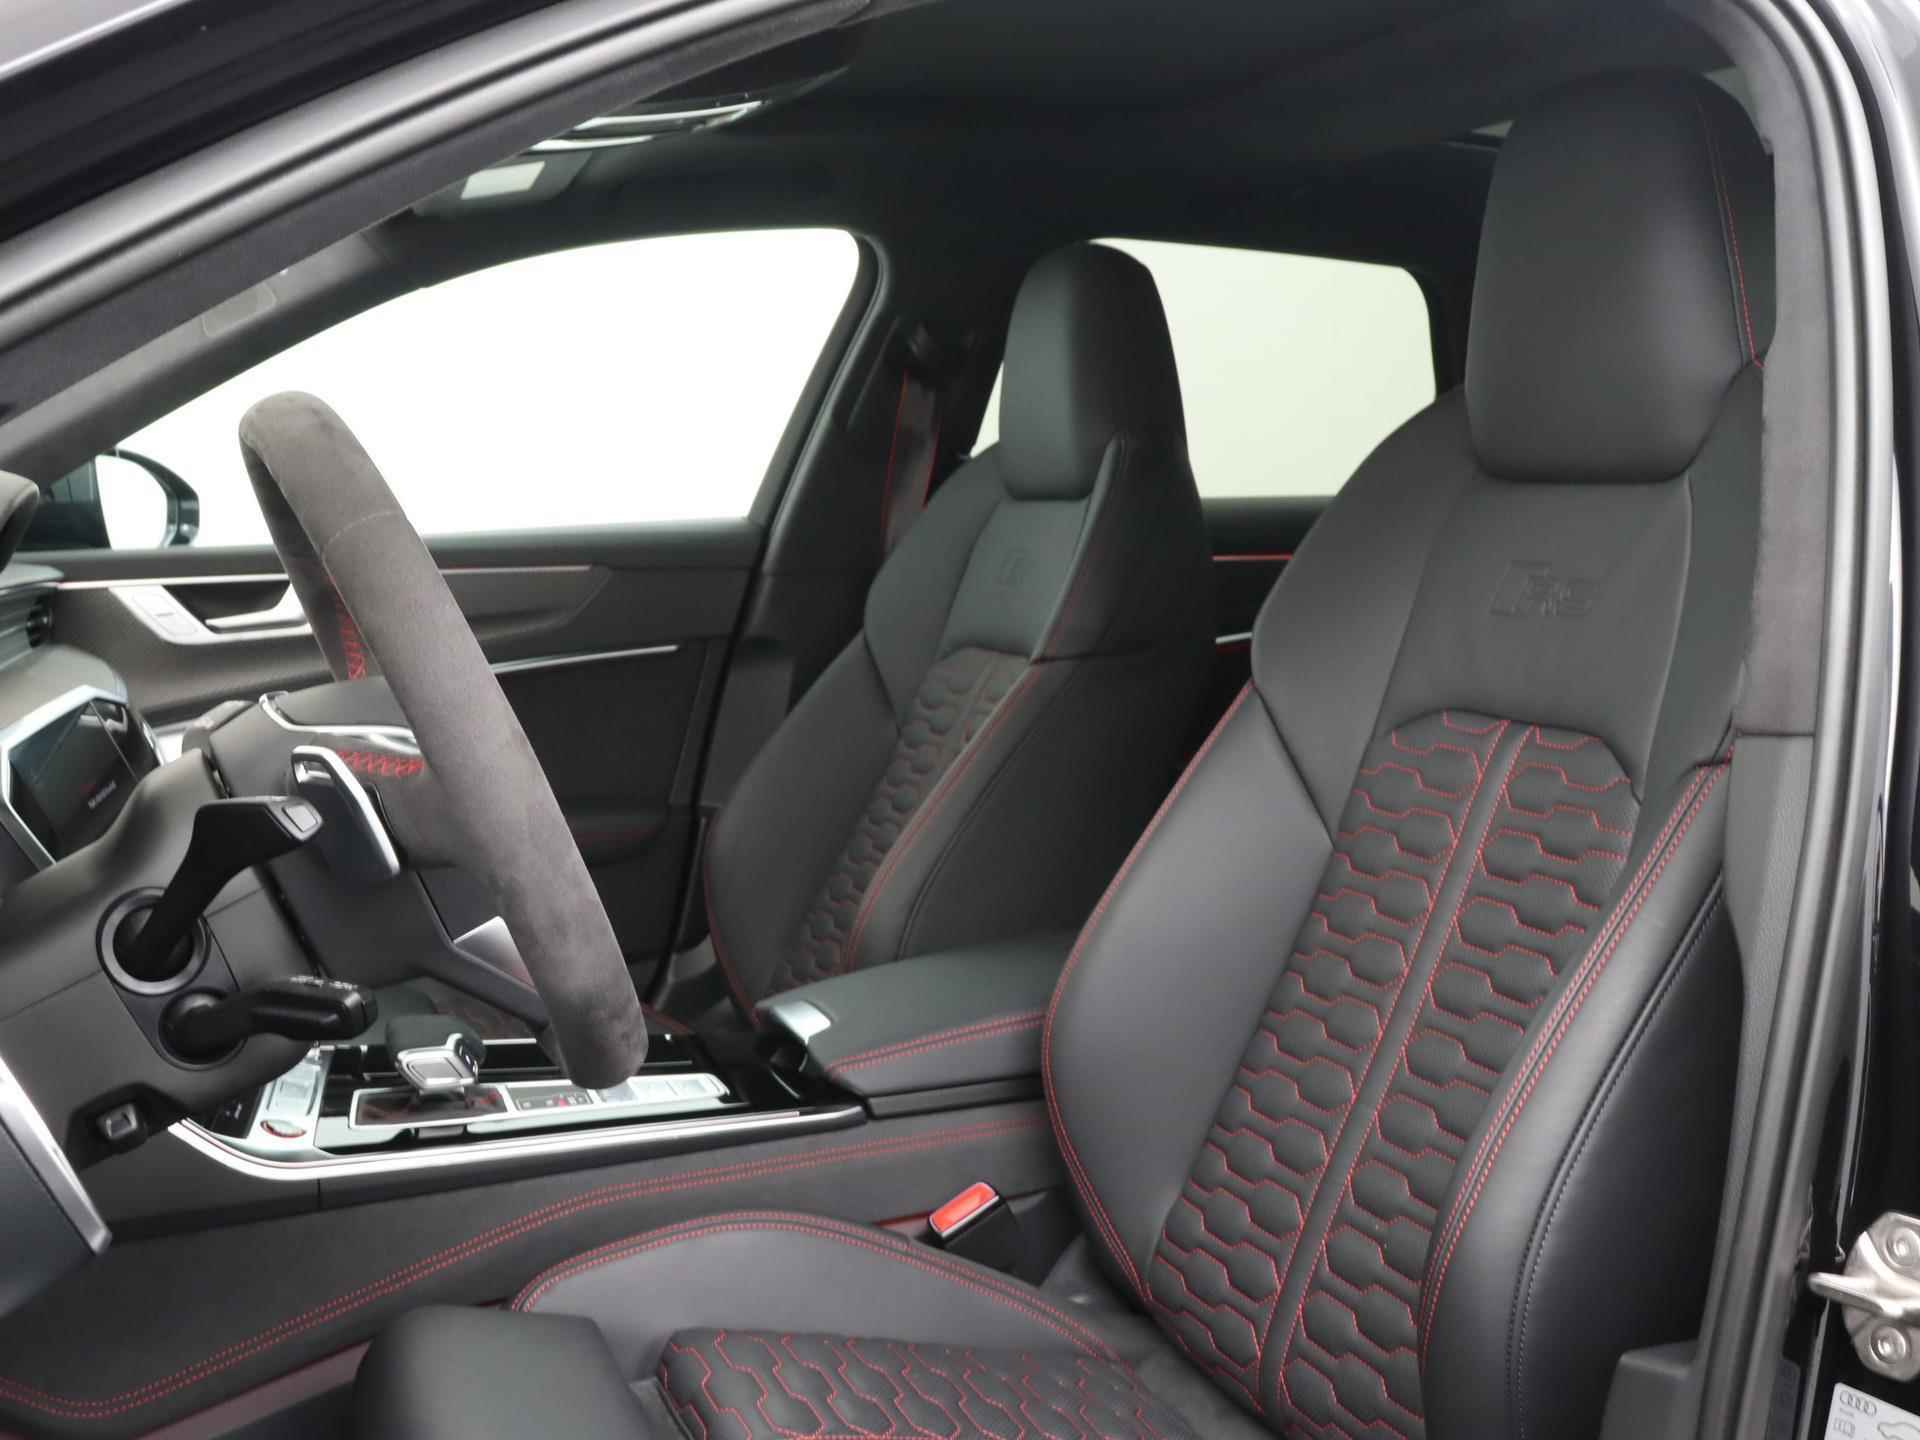 Audi RS6 TFSI quattro 600 PK | Head-up display | Bang & Olufsen Soundsystem | 22 inch lm velgen | RS Dynamic Pakket Plus | RS Design pakket Rood |Optiekpakket Zwart Plus | Panorama dak | RS Sportuitlaat | Keramische remschijven Rood | RS Sportonderstel Plus | Servosluiting deuren | Nu € 36.129,- ACTIEKORTING! | DIRECT LEVERBAAR! | NIEUWE AUTO! | - 6/35